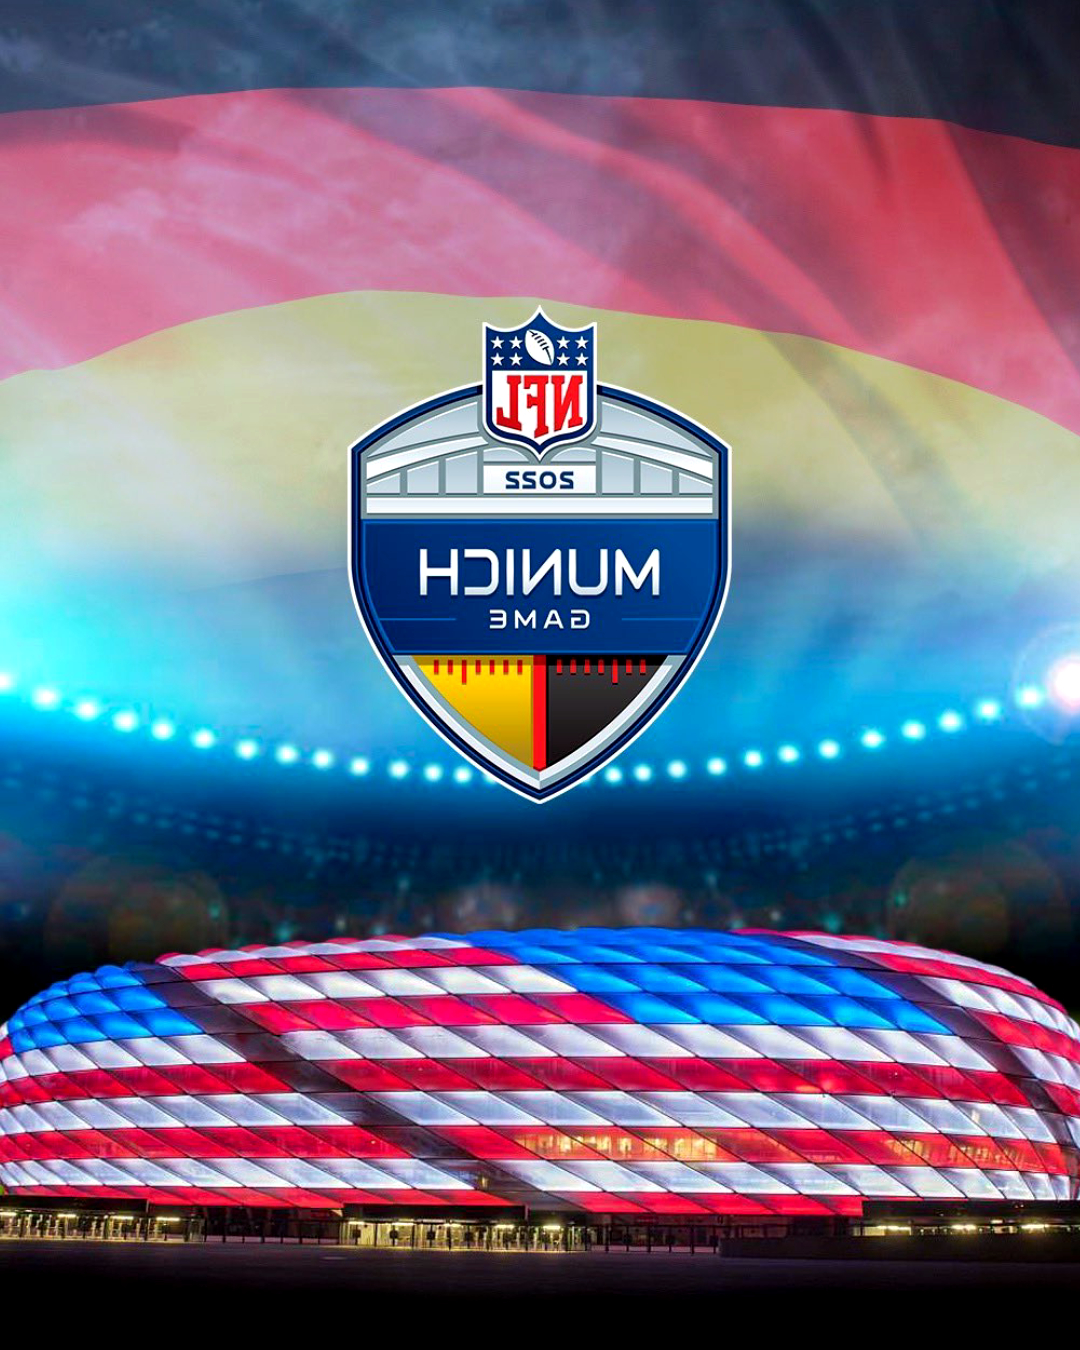 NFL officielle : quatre matchs de la saison régulière auront lieu en Allemagne d'ici 2025